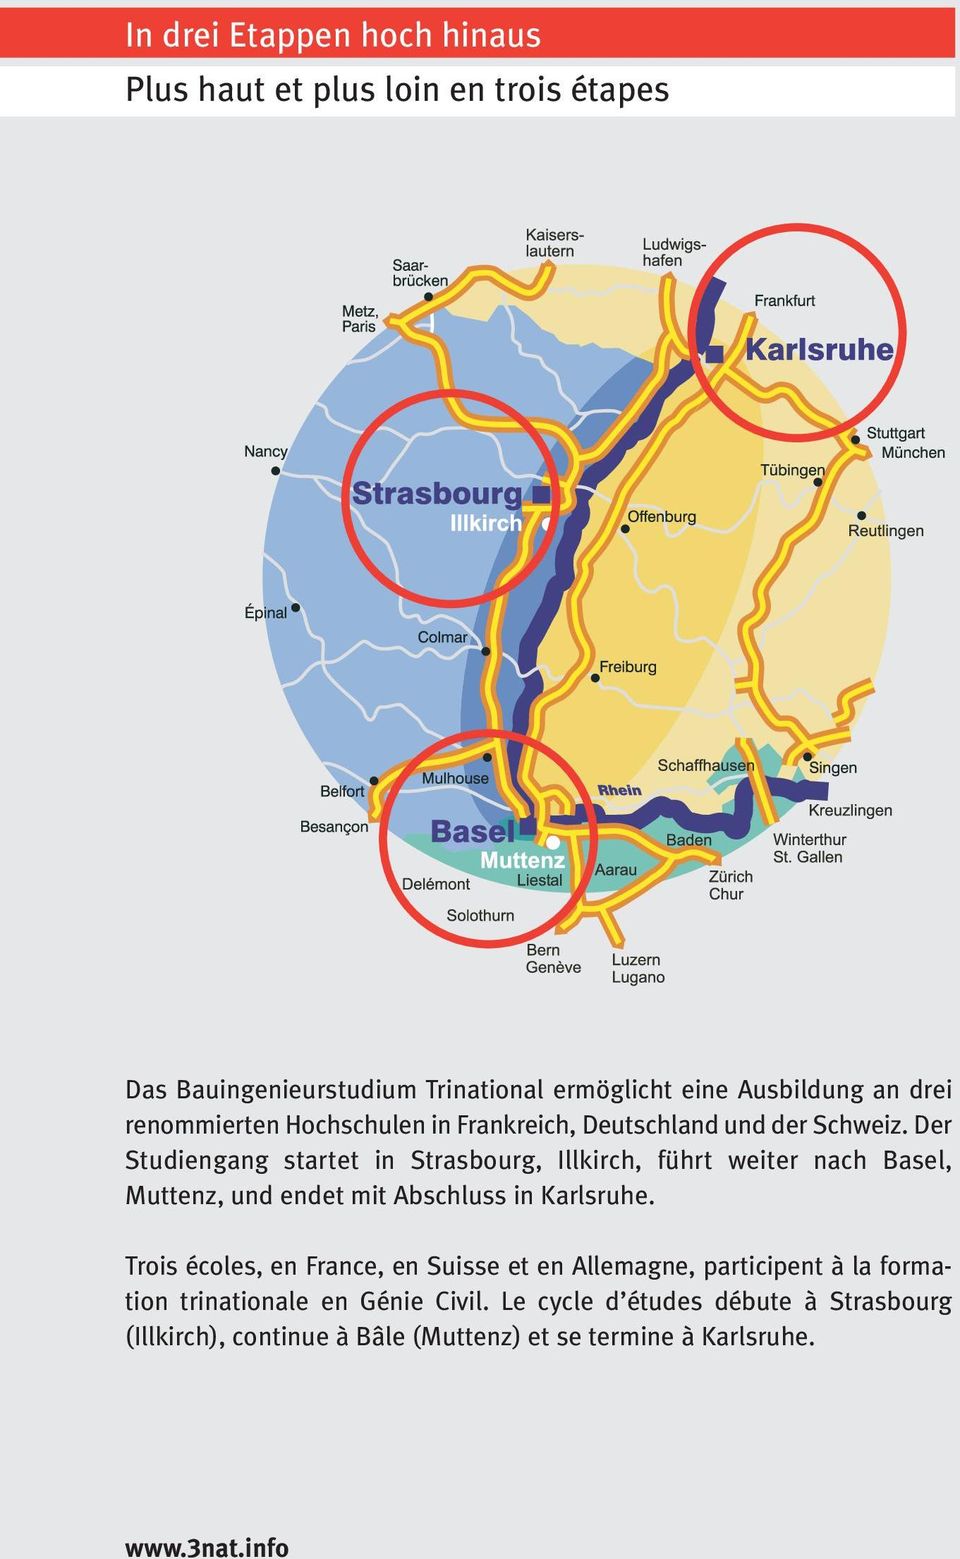 Der Studiengang startet in Strasbourg, Illkirch, führt weiter nach Basel, Muttenz, und endet mit Abschluss in Karlsruhe.